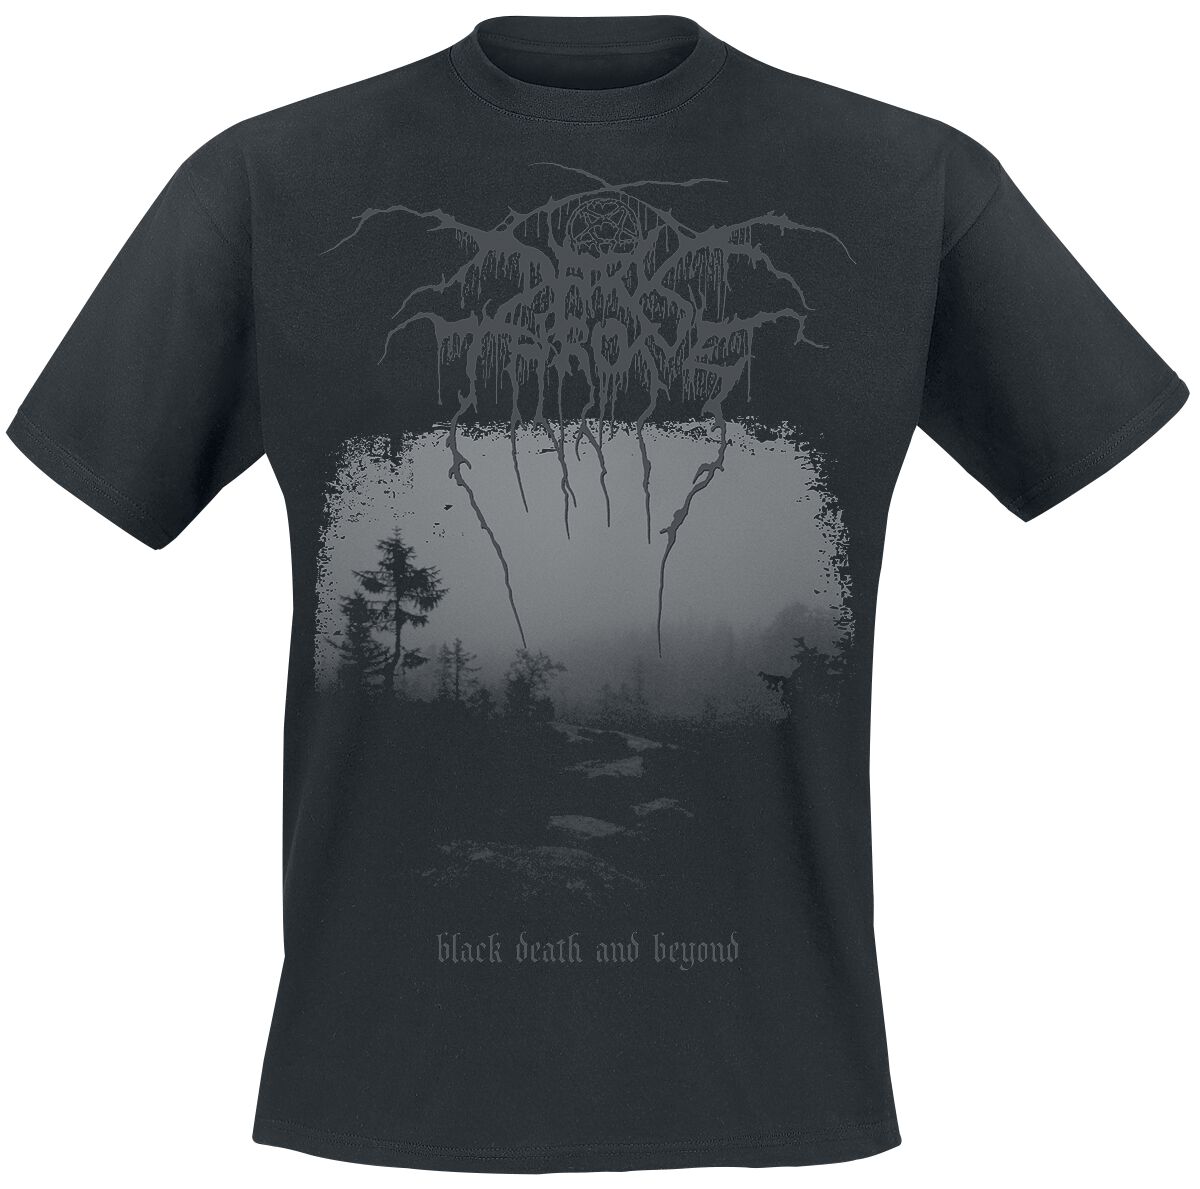 Darkthrone T-Shirt - Black death and beyond - S bis XL - für Männer - Größe S - schwarz  - Lizenziertes Merchandise!